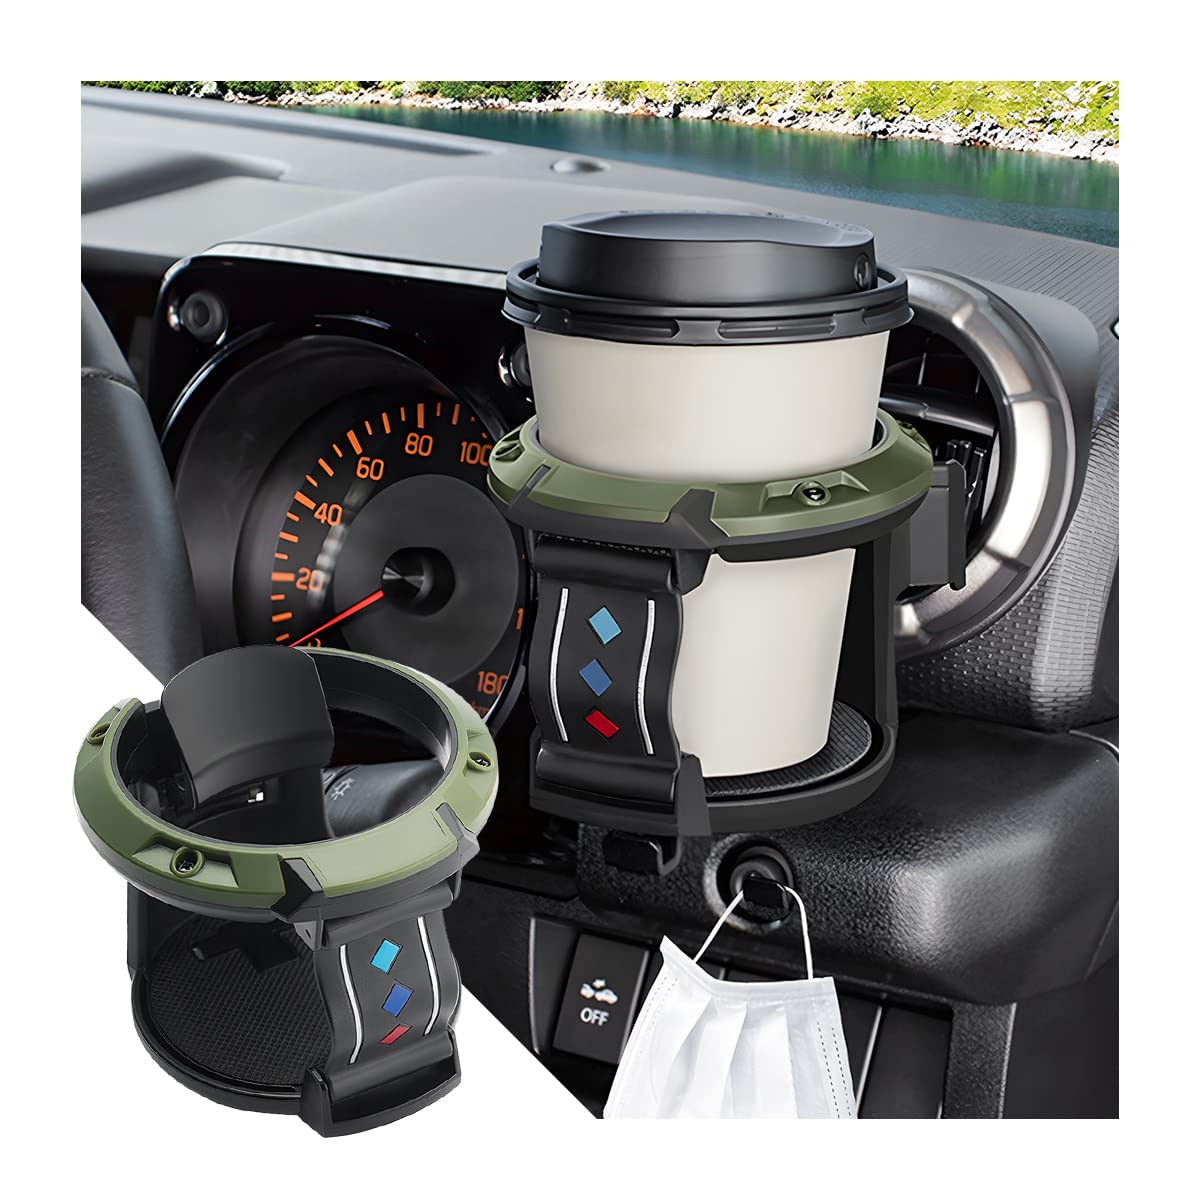 JNNJ Auto Getränkehalter, Universal Getränkehalter Auto Lüftung, Verstellbare Auto Lüftungshalterung Für Kaffeebecher Getränkedose, Für Den Meisten Fahrzeugen(Schwarz/Grün) von JNNJ